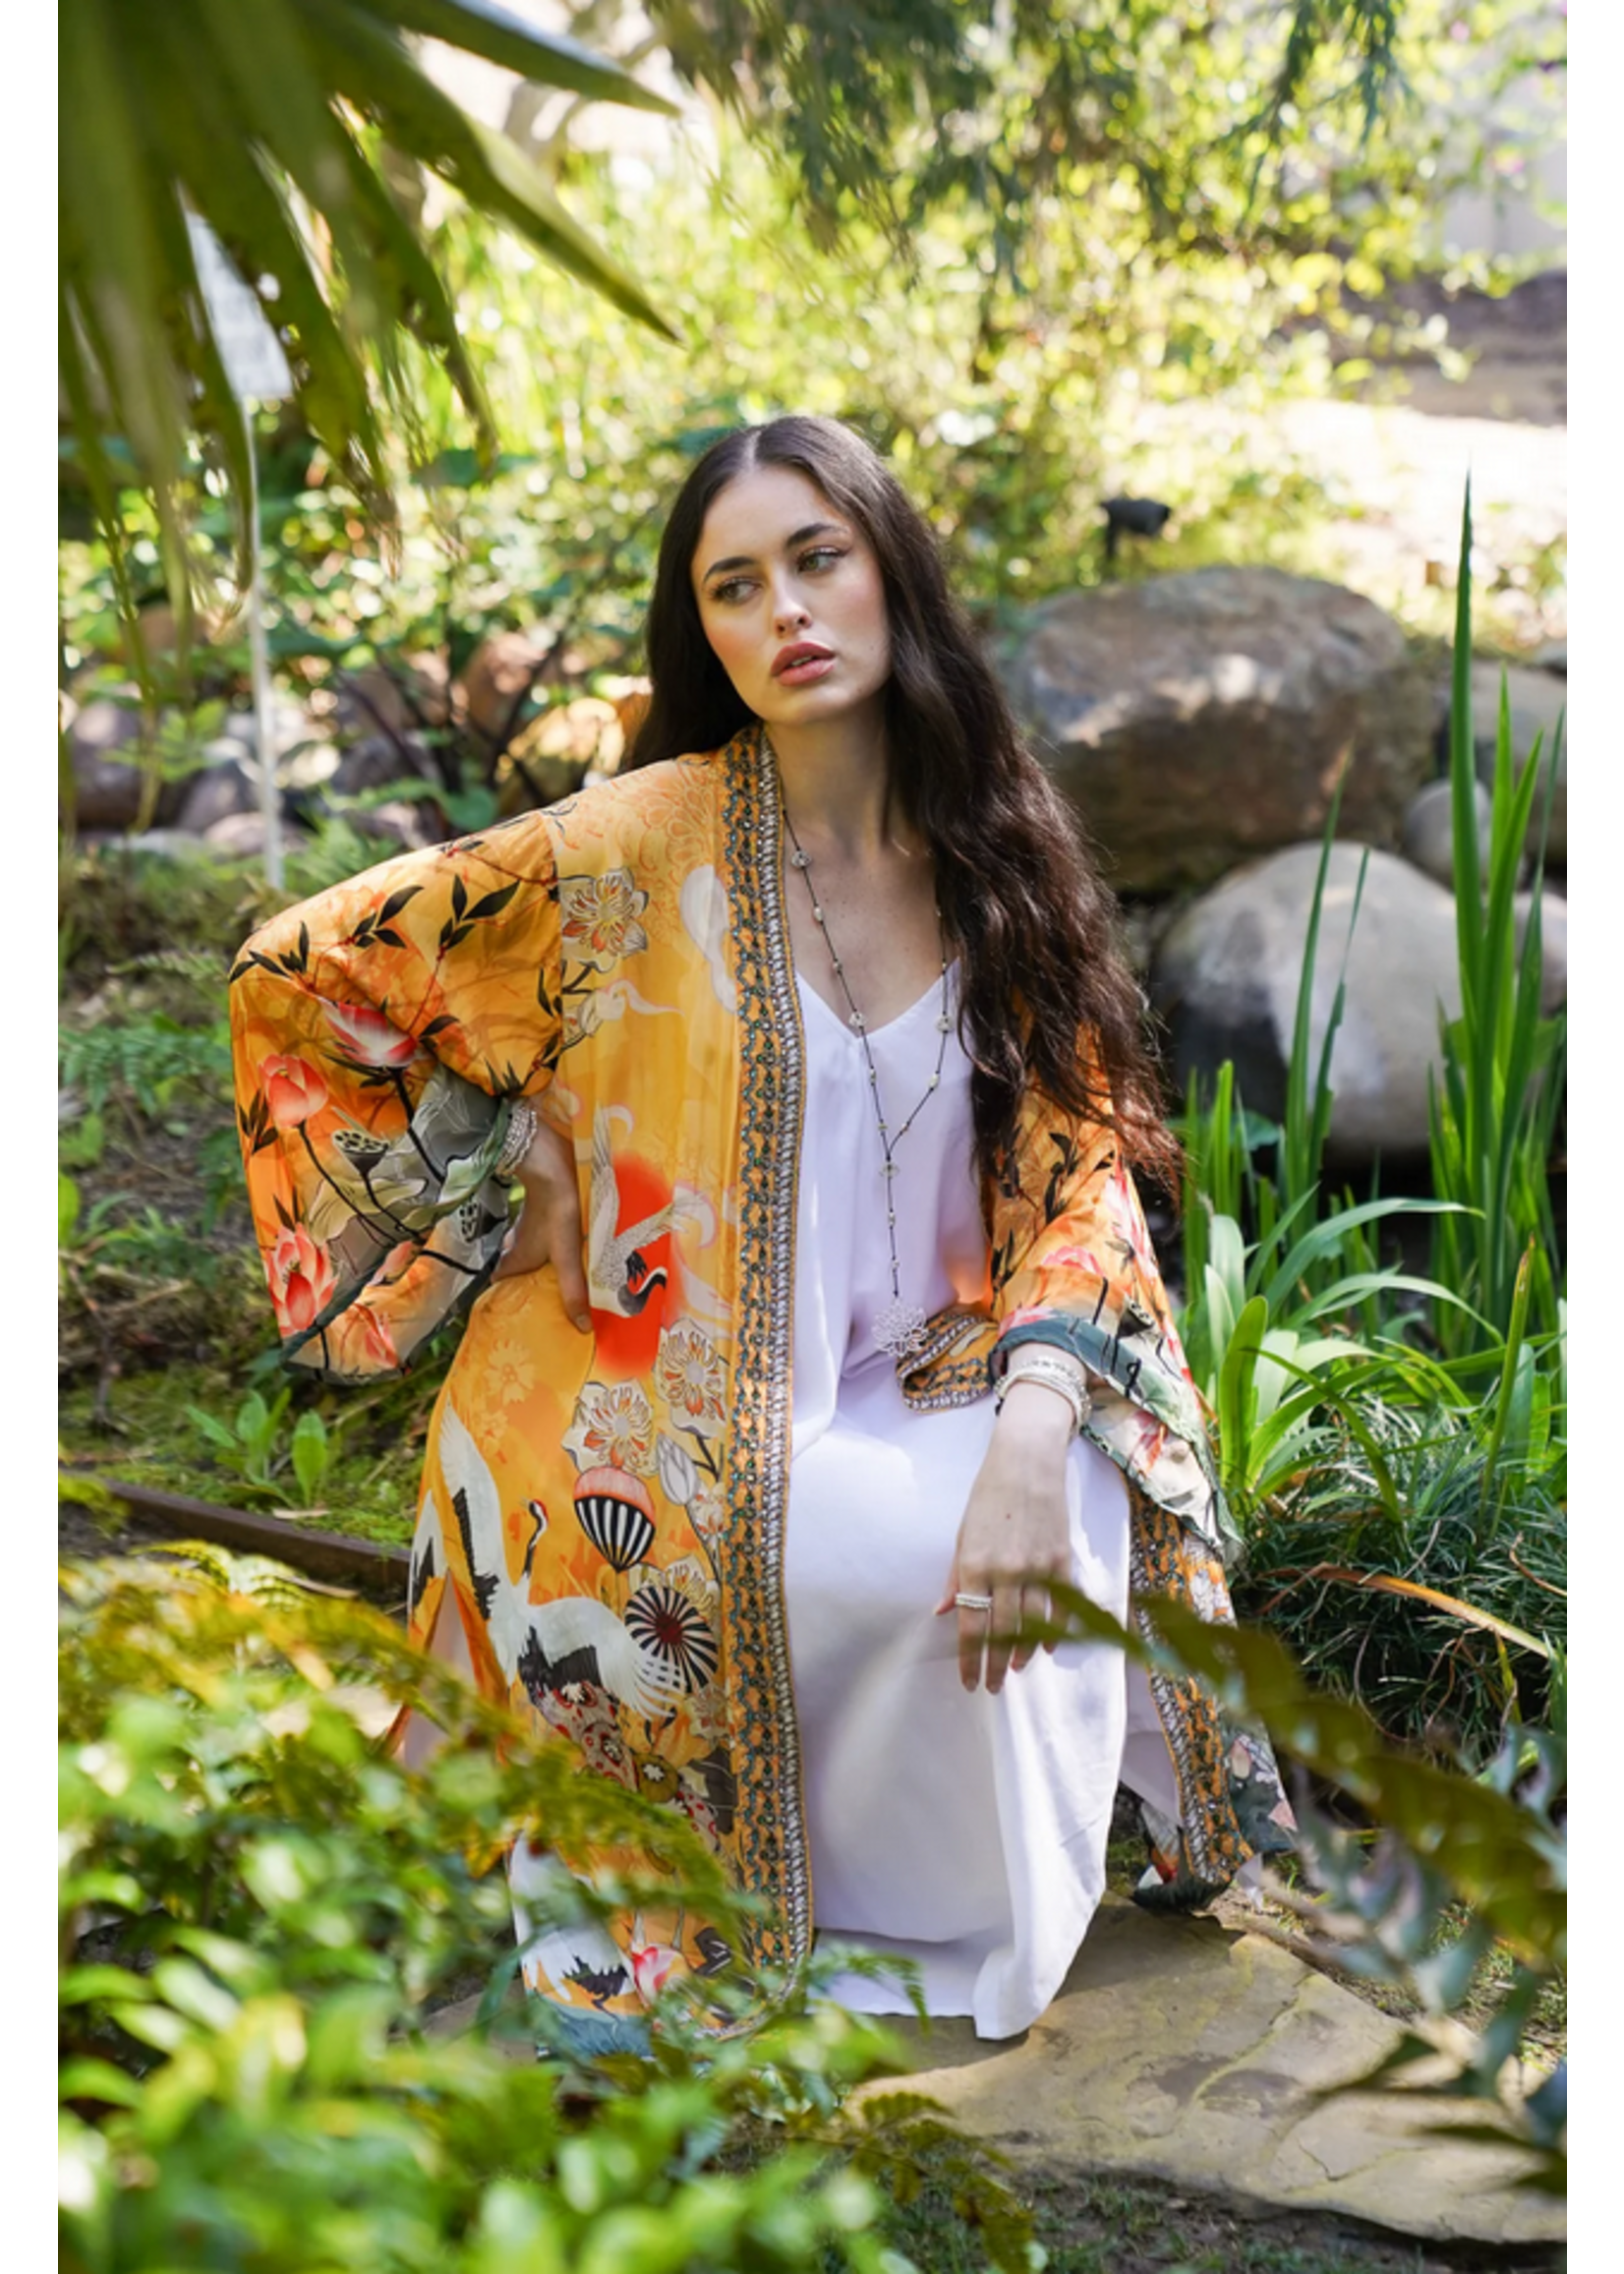 Bali Queen Bombay Jeweled Kimono Crane Sunrise Viscose Silk 1 Size